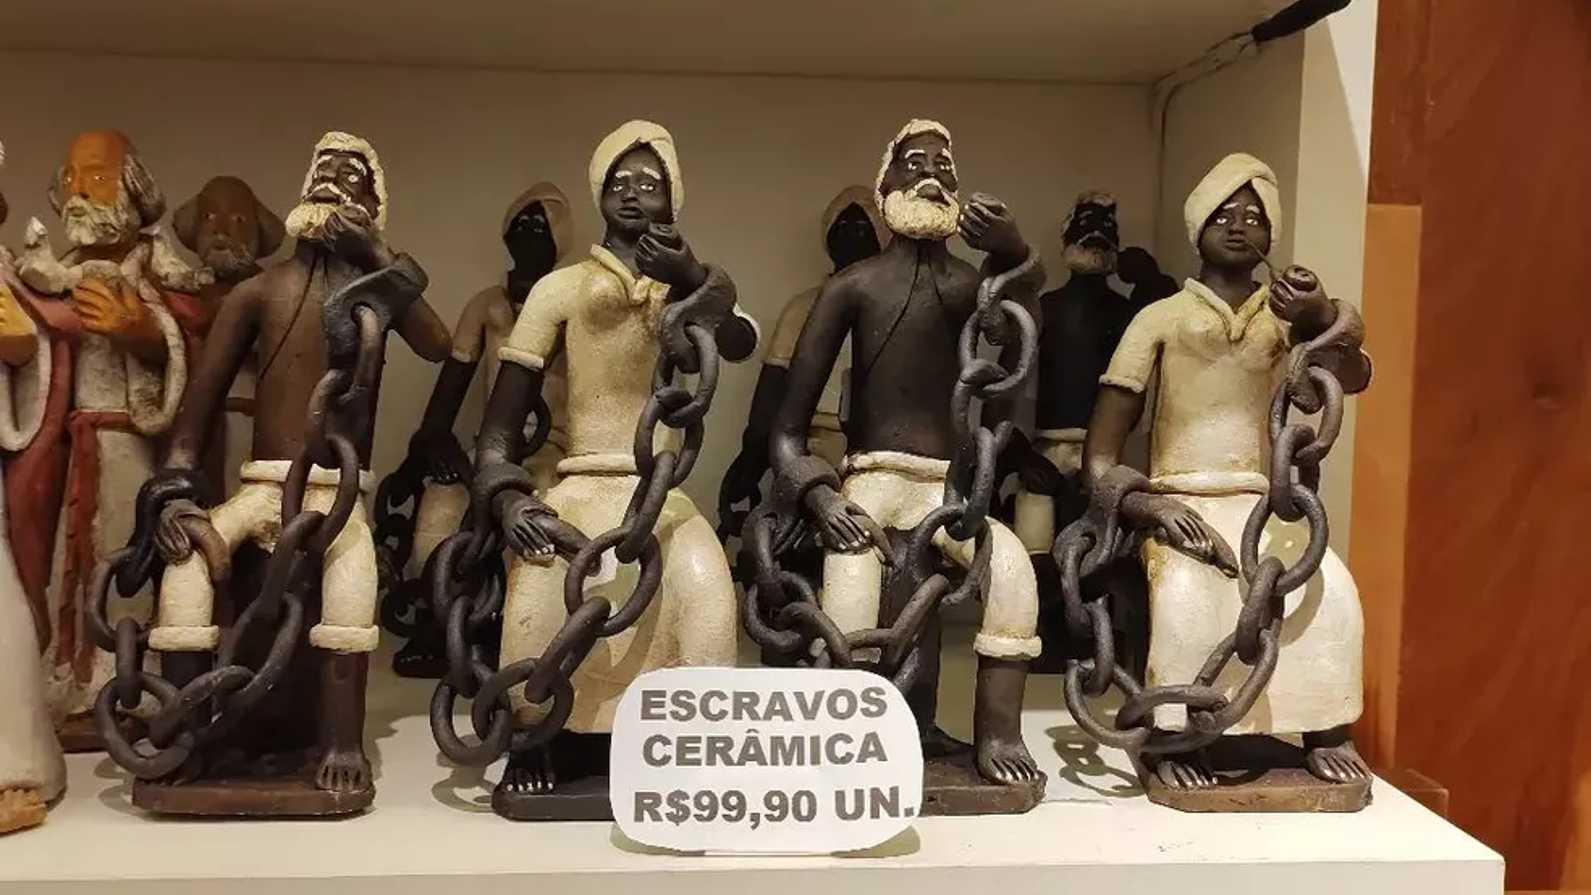 BA: Loja em aeroporto é alvo de críticas por vender peças de negros escravizados